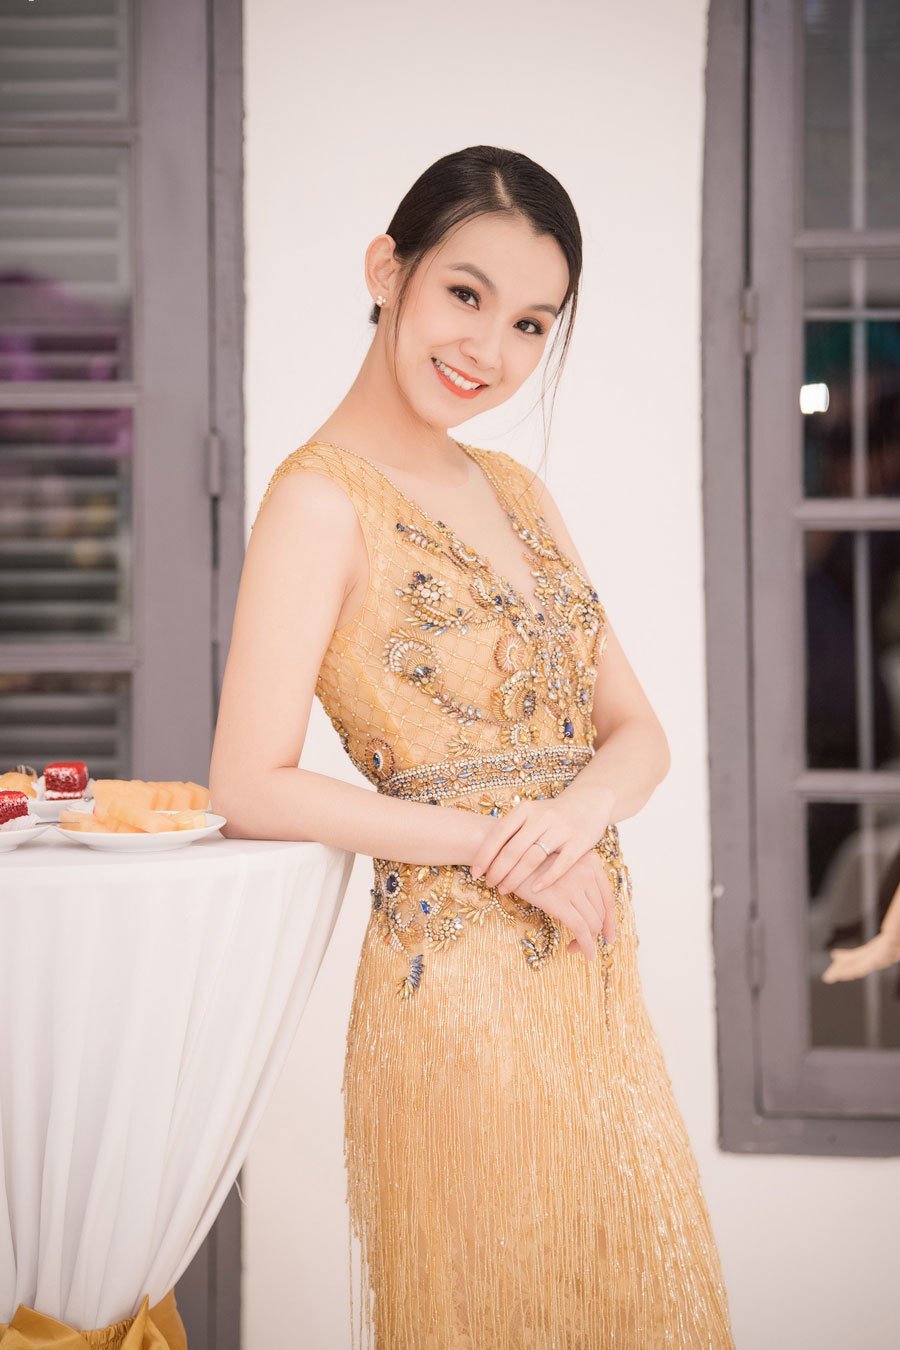 Tái xuất tại một sự kiện sau thời gian dài không tham gia các hoạt động của làng giải trí Việt, Hoa hậu Hoàn vũ 2008 Thùy Lâm khiến nhiều người bất ngờ bởi vẻ ngoài quá trẻ trung, rạng rỡ dù đã 2 con. (vietnamnet)